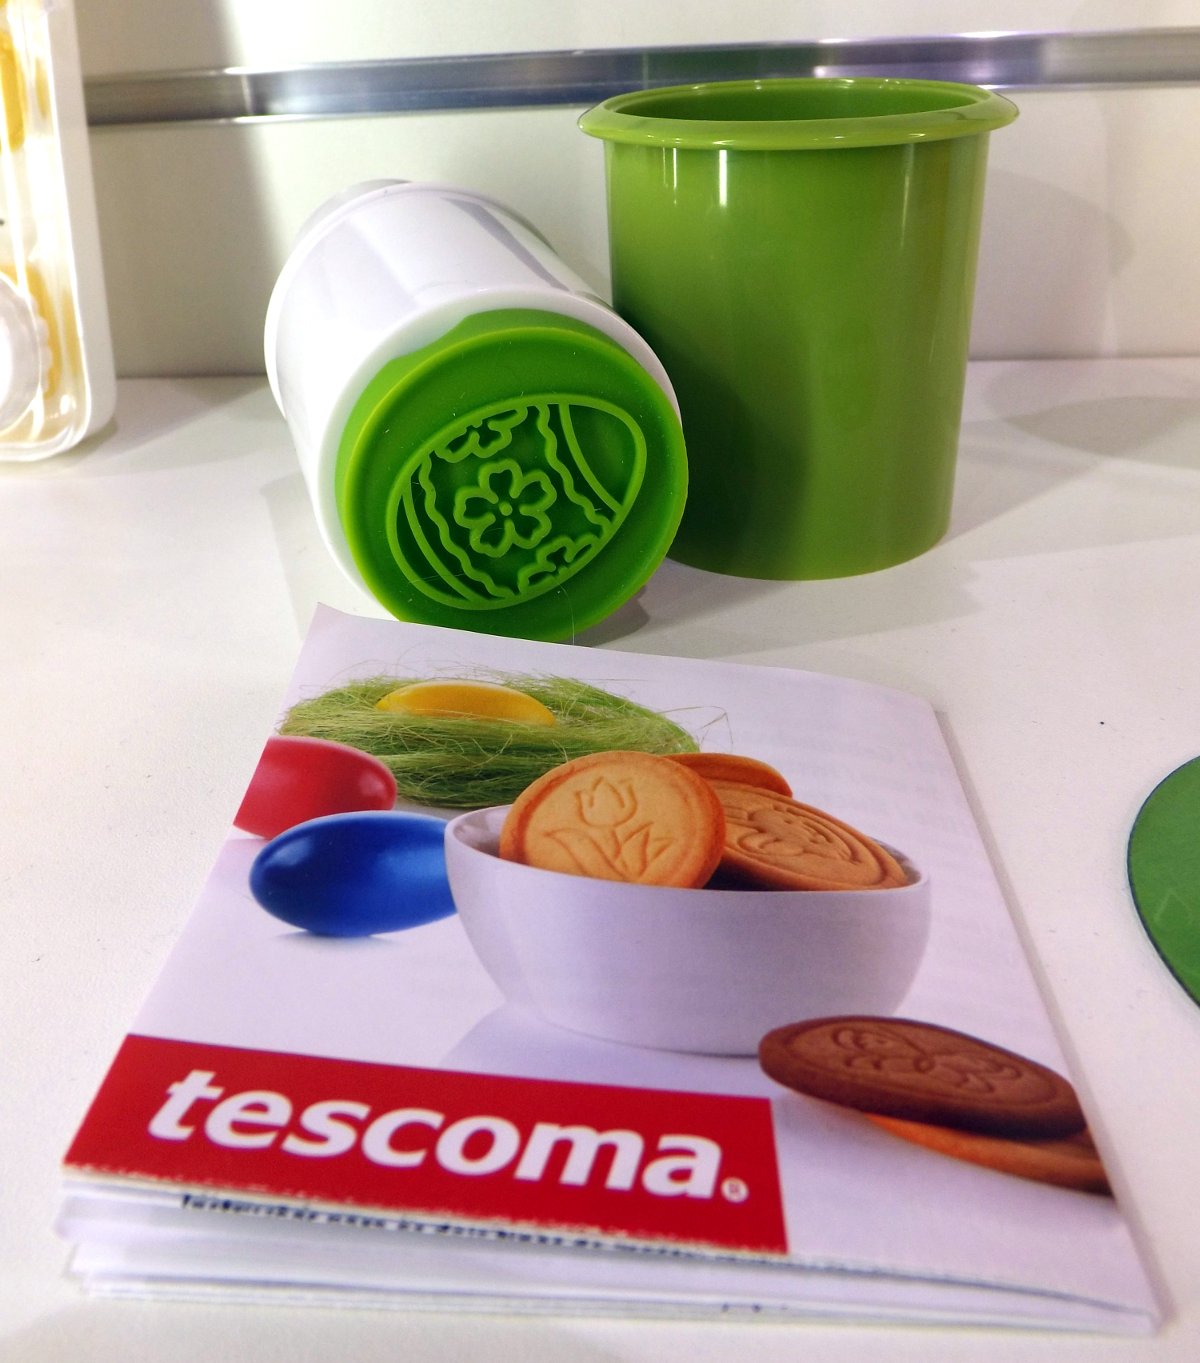 Форма для штамповки печенья с рисунками от Tescoma на весенней выставке HouseHoldExpo 2015